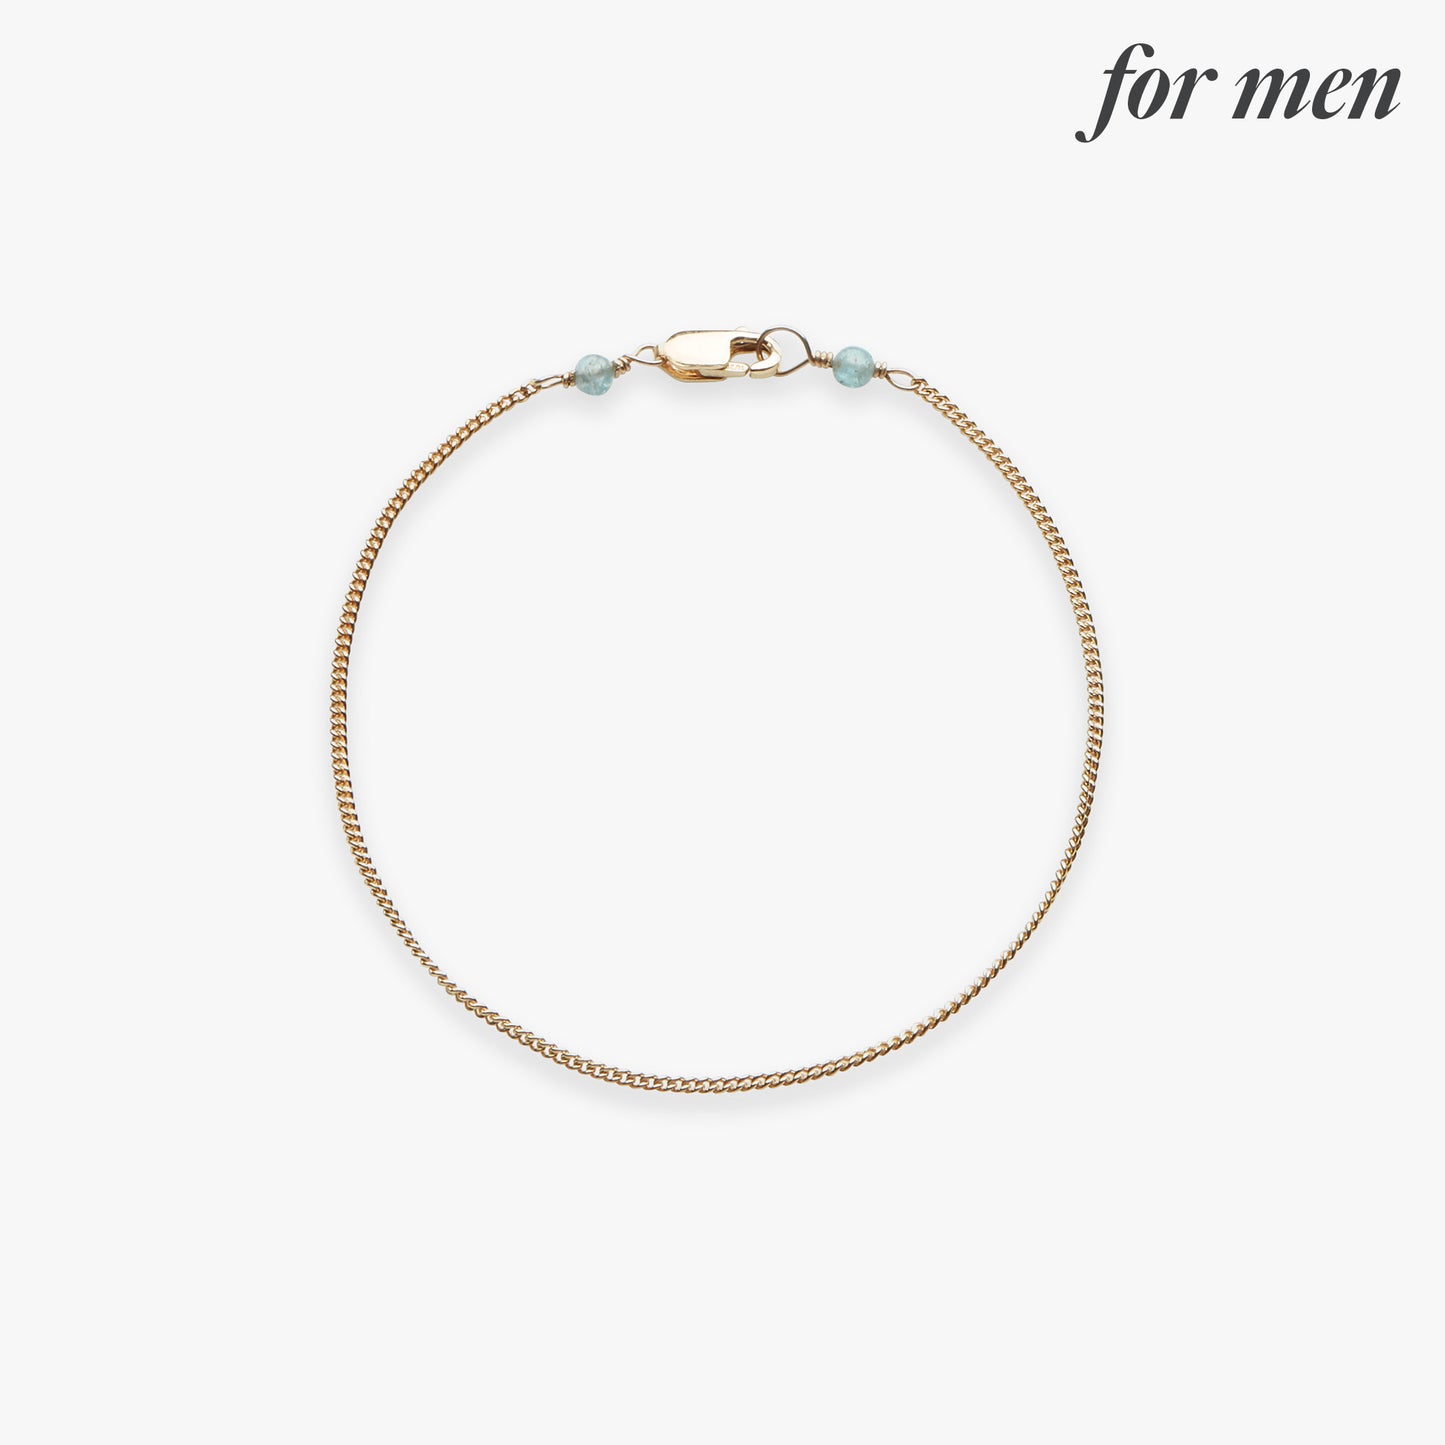 Curb chain bracelet gold filled for men